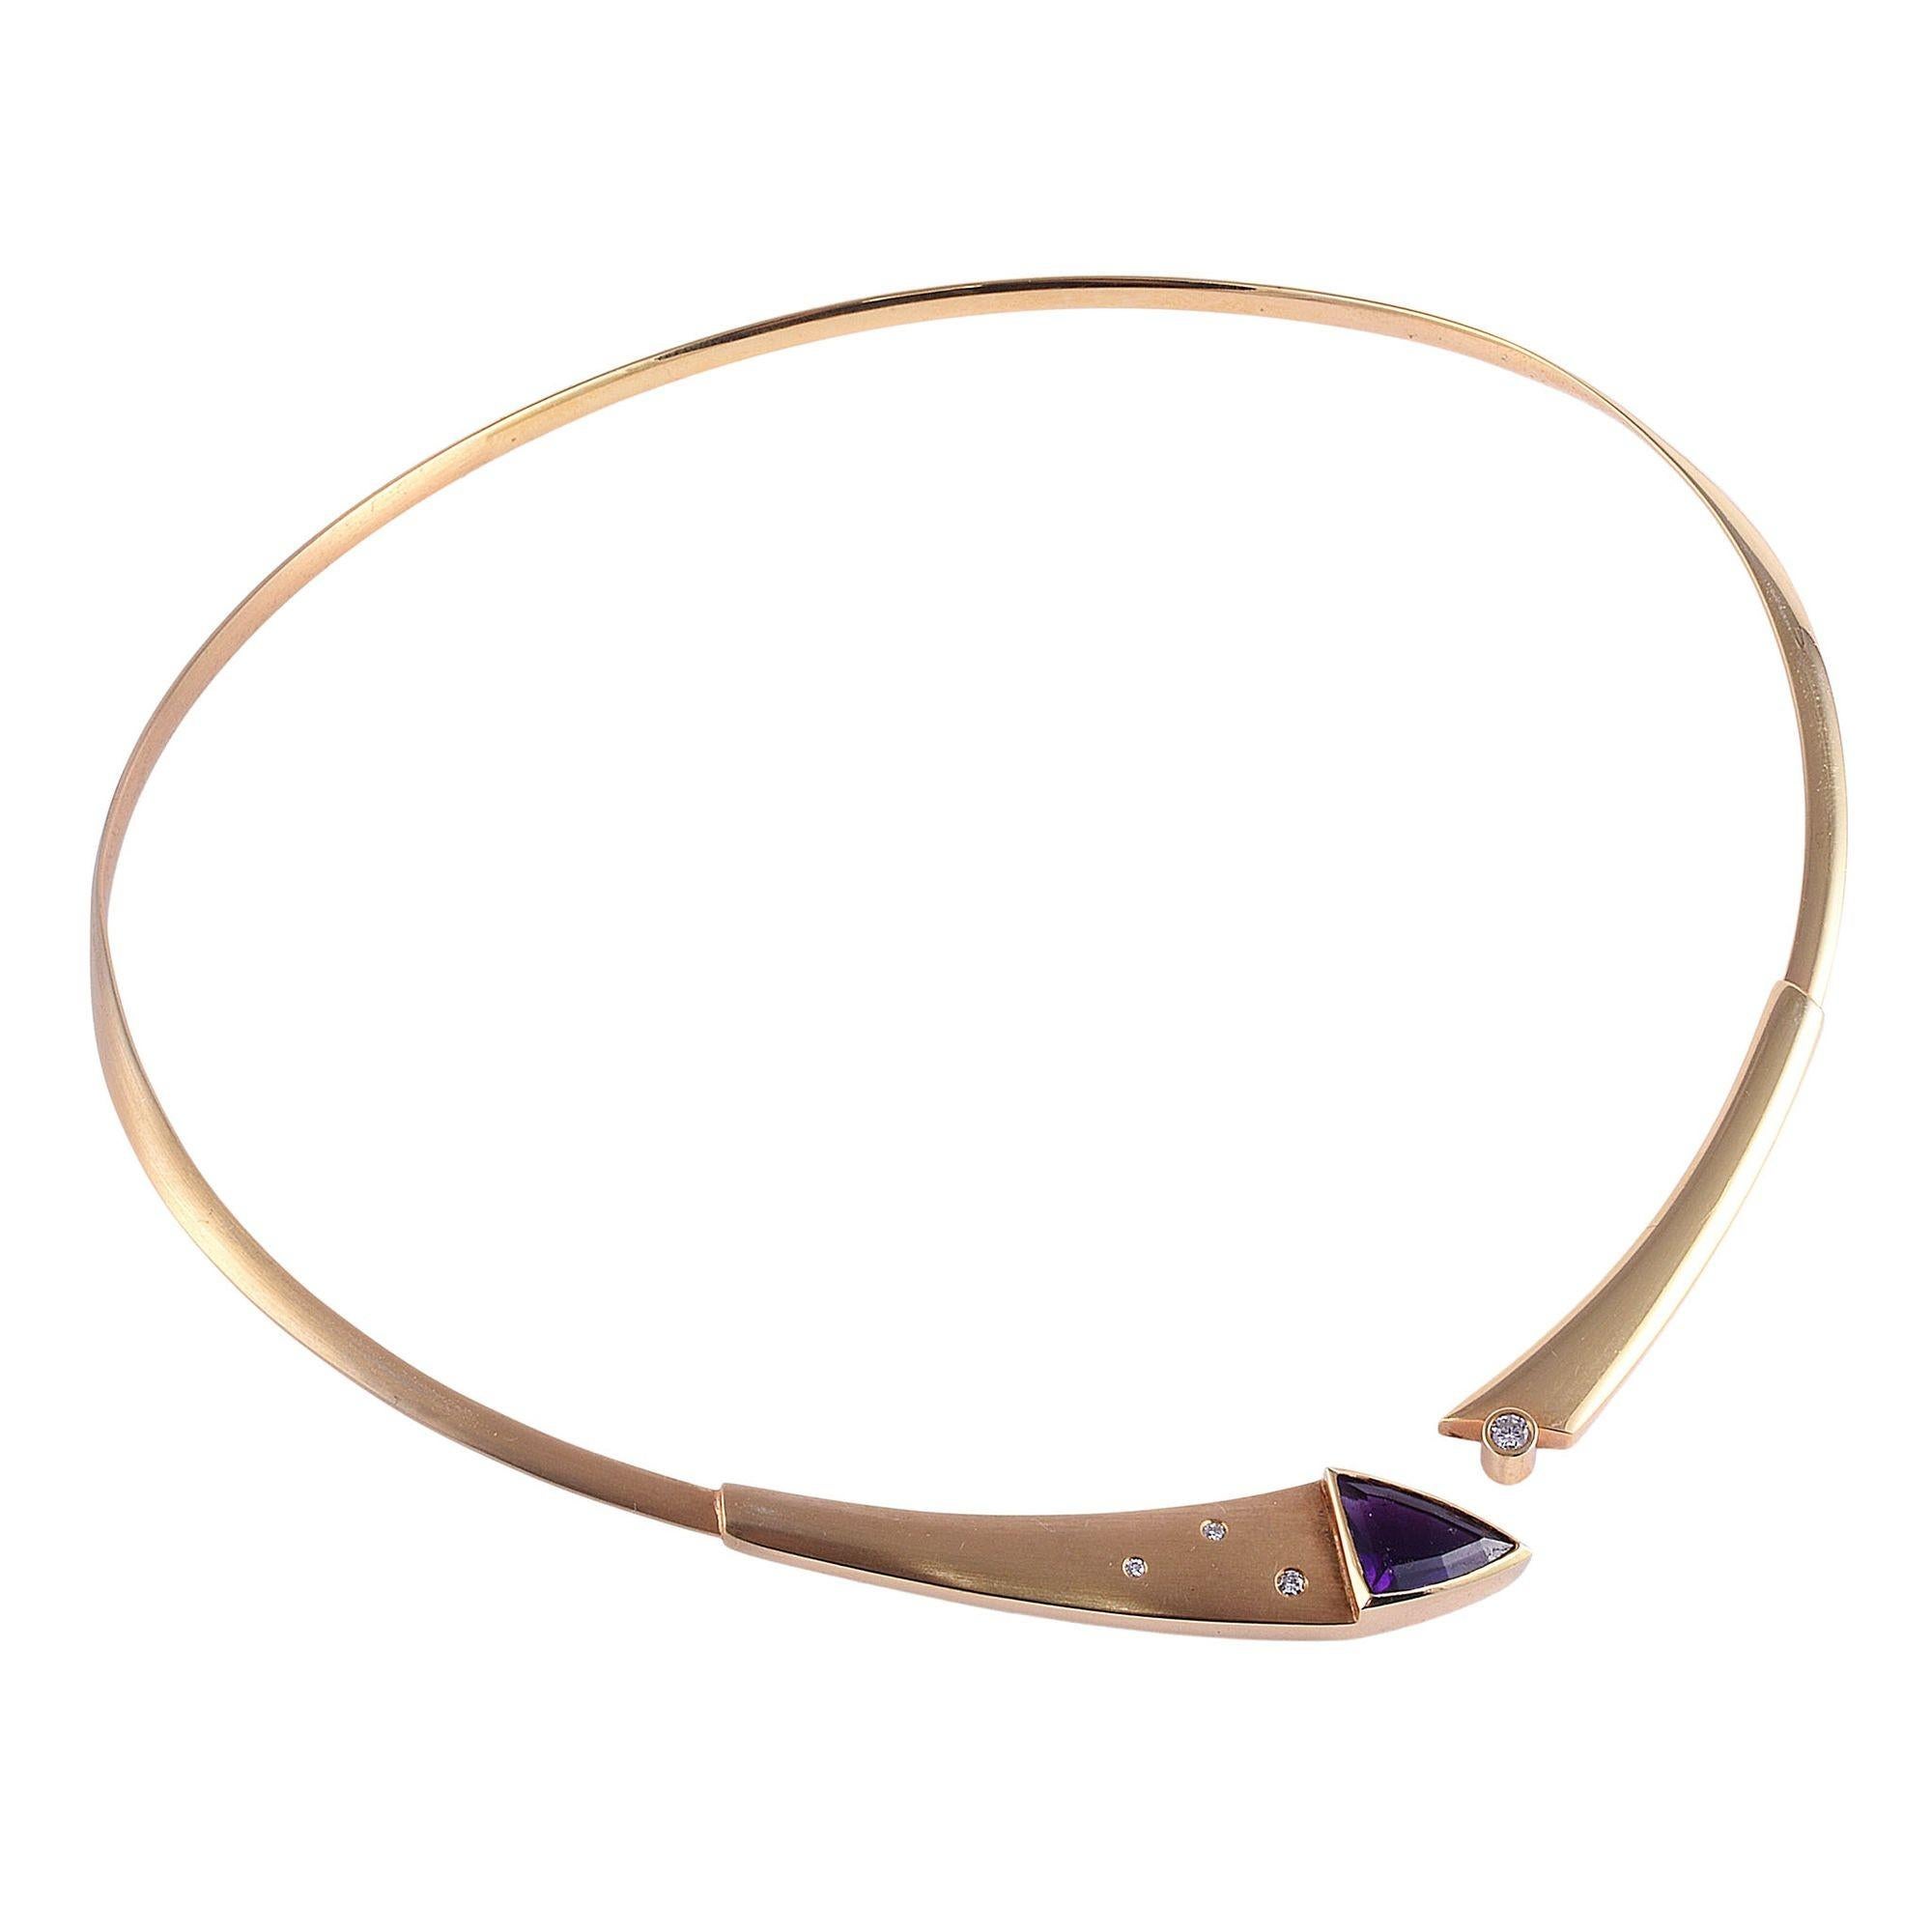 Estate benutzerdefinierte moderne Design Amethyst Kragen Halskette. Diese auffällige Halskette in modernem Design ist aus 14 Karat Gelbgold gefertigt und mit einem Amethysten im Sonderschliff versehen, der mit Diamanten akzentuiert ist. [KIMH